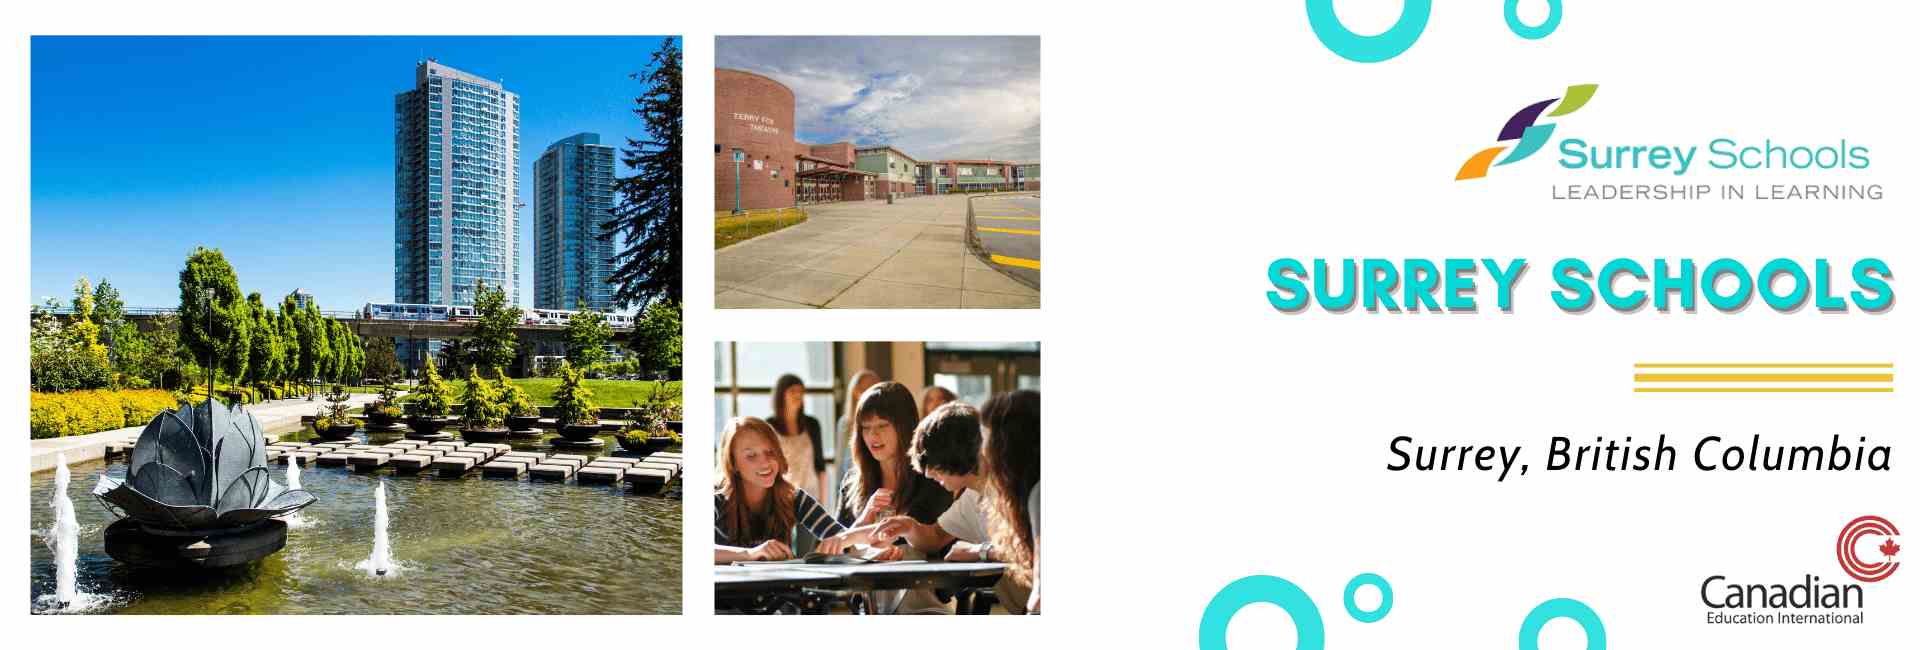 Surrey Schools in Metropolitan Vancouver